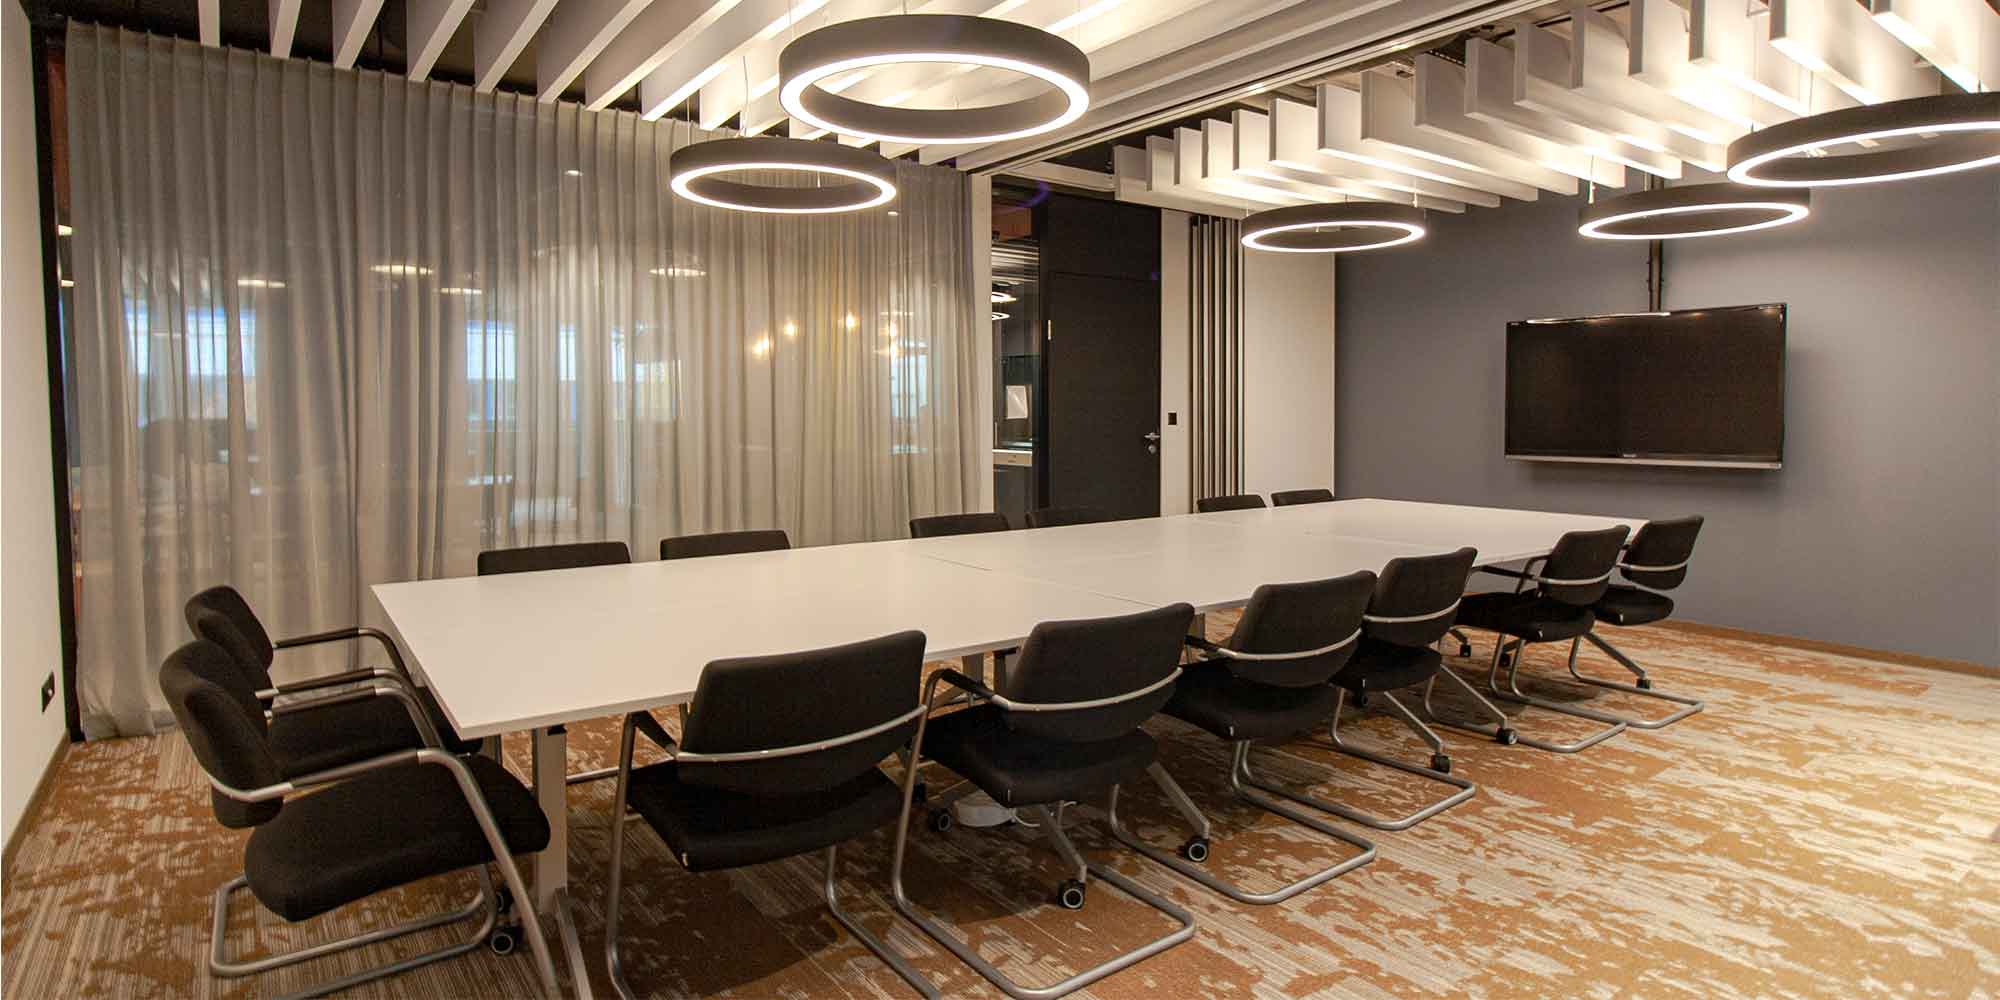 Dieses Sitzungszimmer ist mit mehreren Ringostar Pendeleluchten von lightnet ausgestattet. Diese geben eine optimale Grundbeleuchtung und die Leuchte wirkt als element der Raumgestaltung